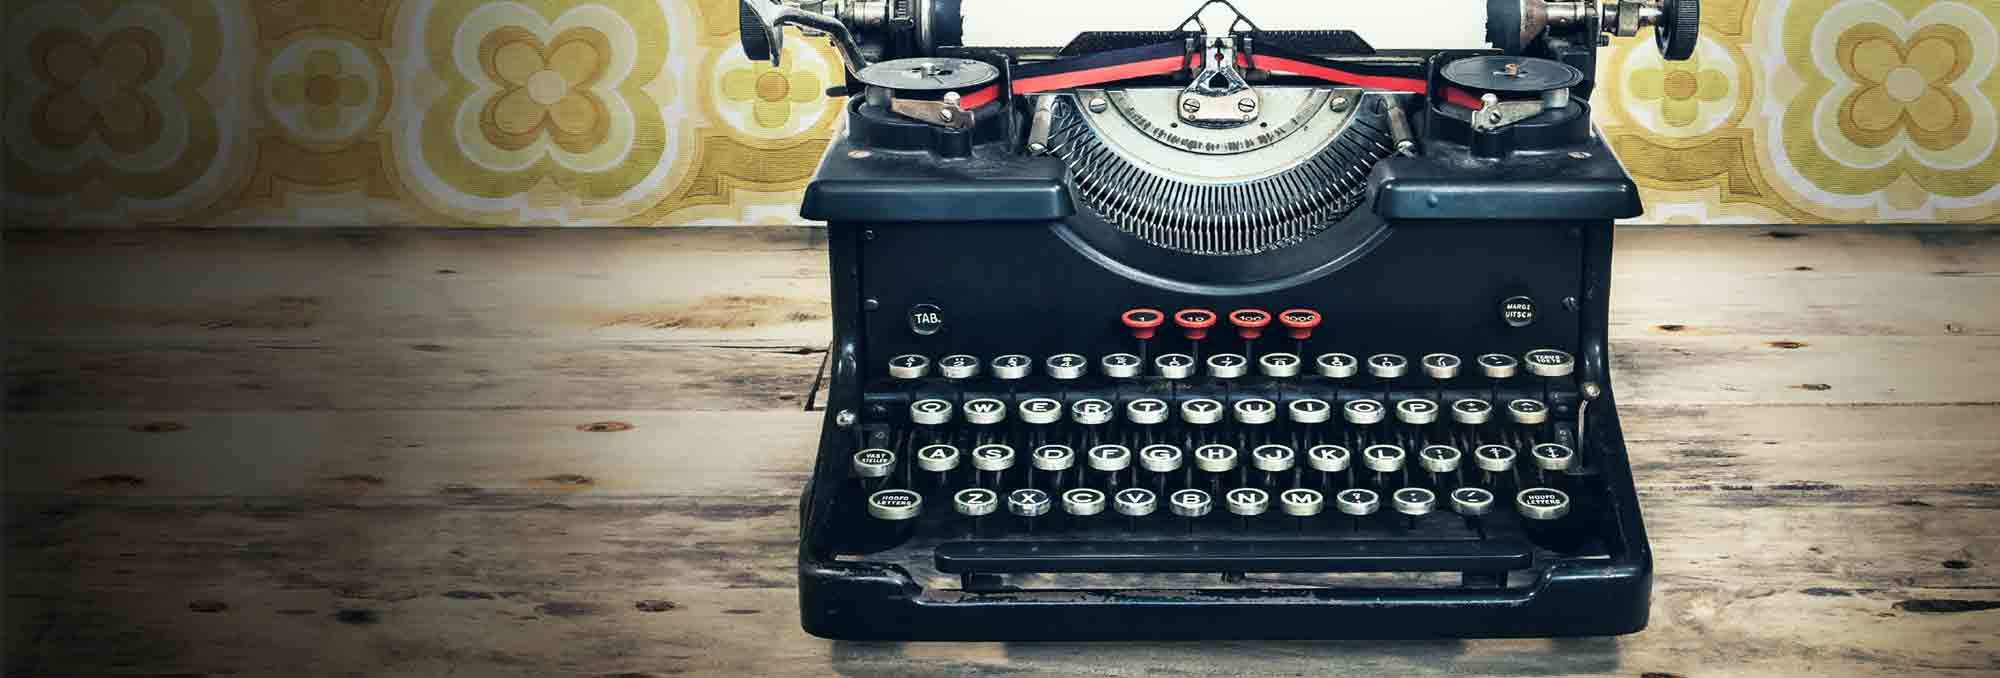 Ian_Balfour_typewriter